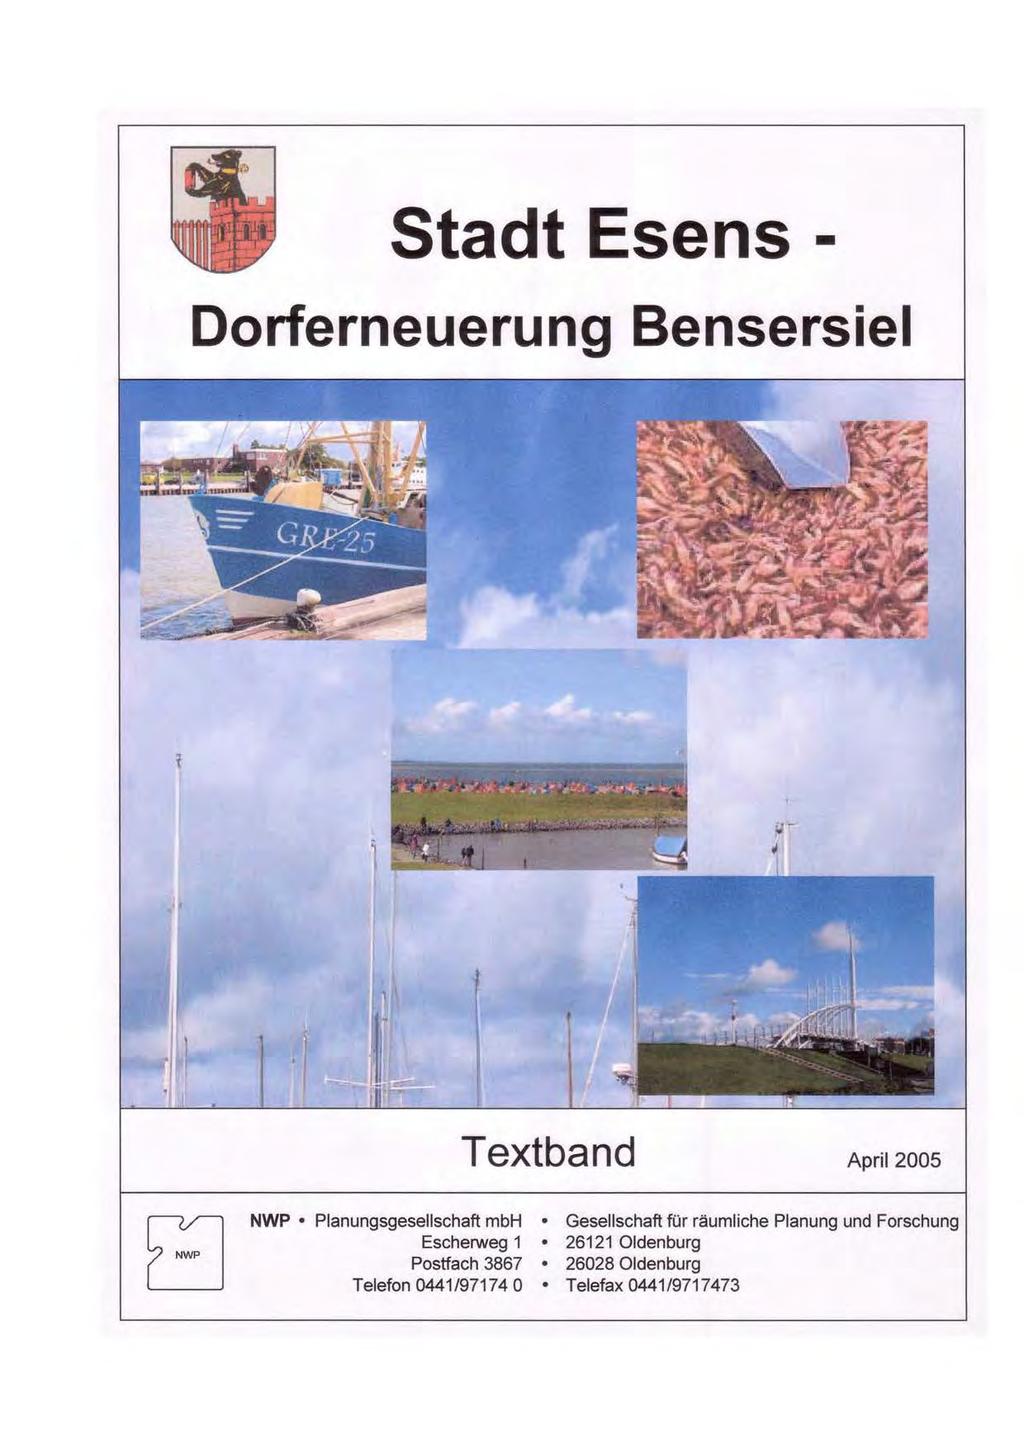 Stadt Esens - Dorferneuerung Bensersiel Textband April 2005 NWP Planungsgesellschaft mbh Gesellschaft für räumliche